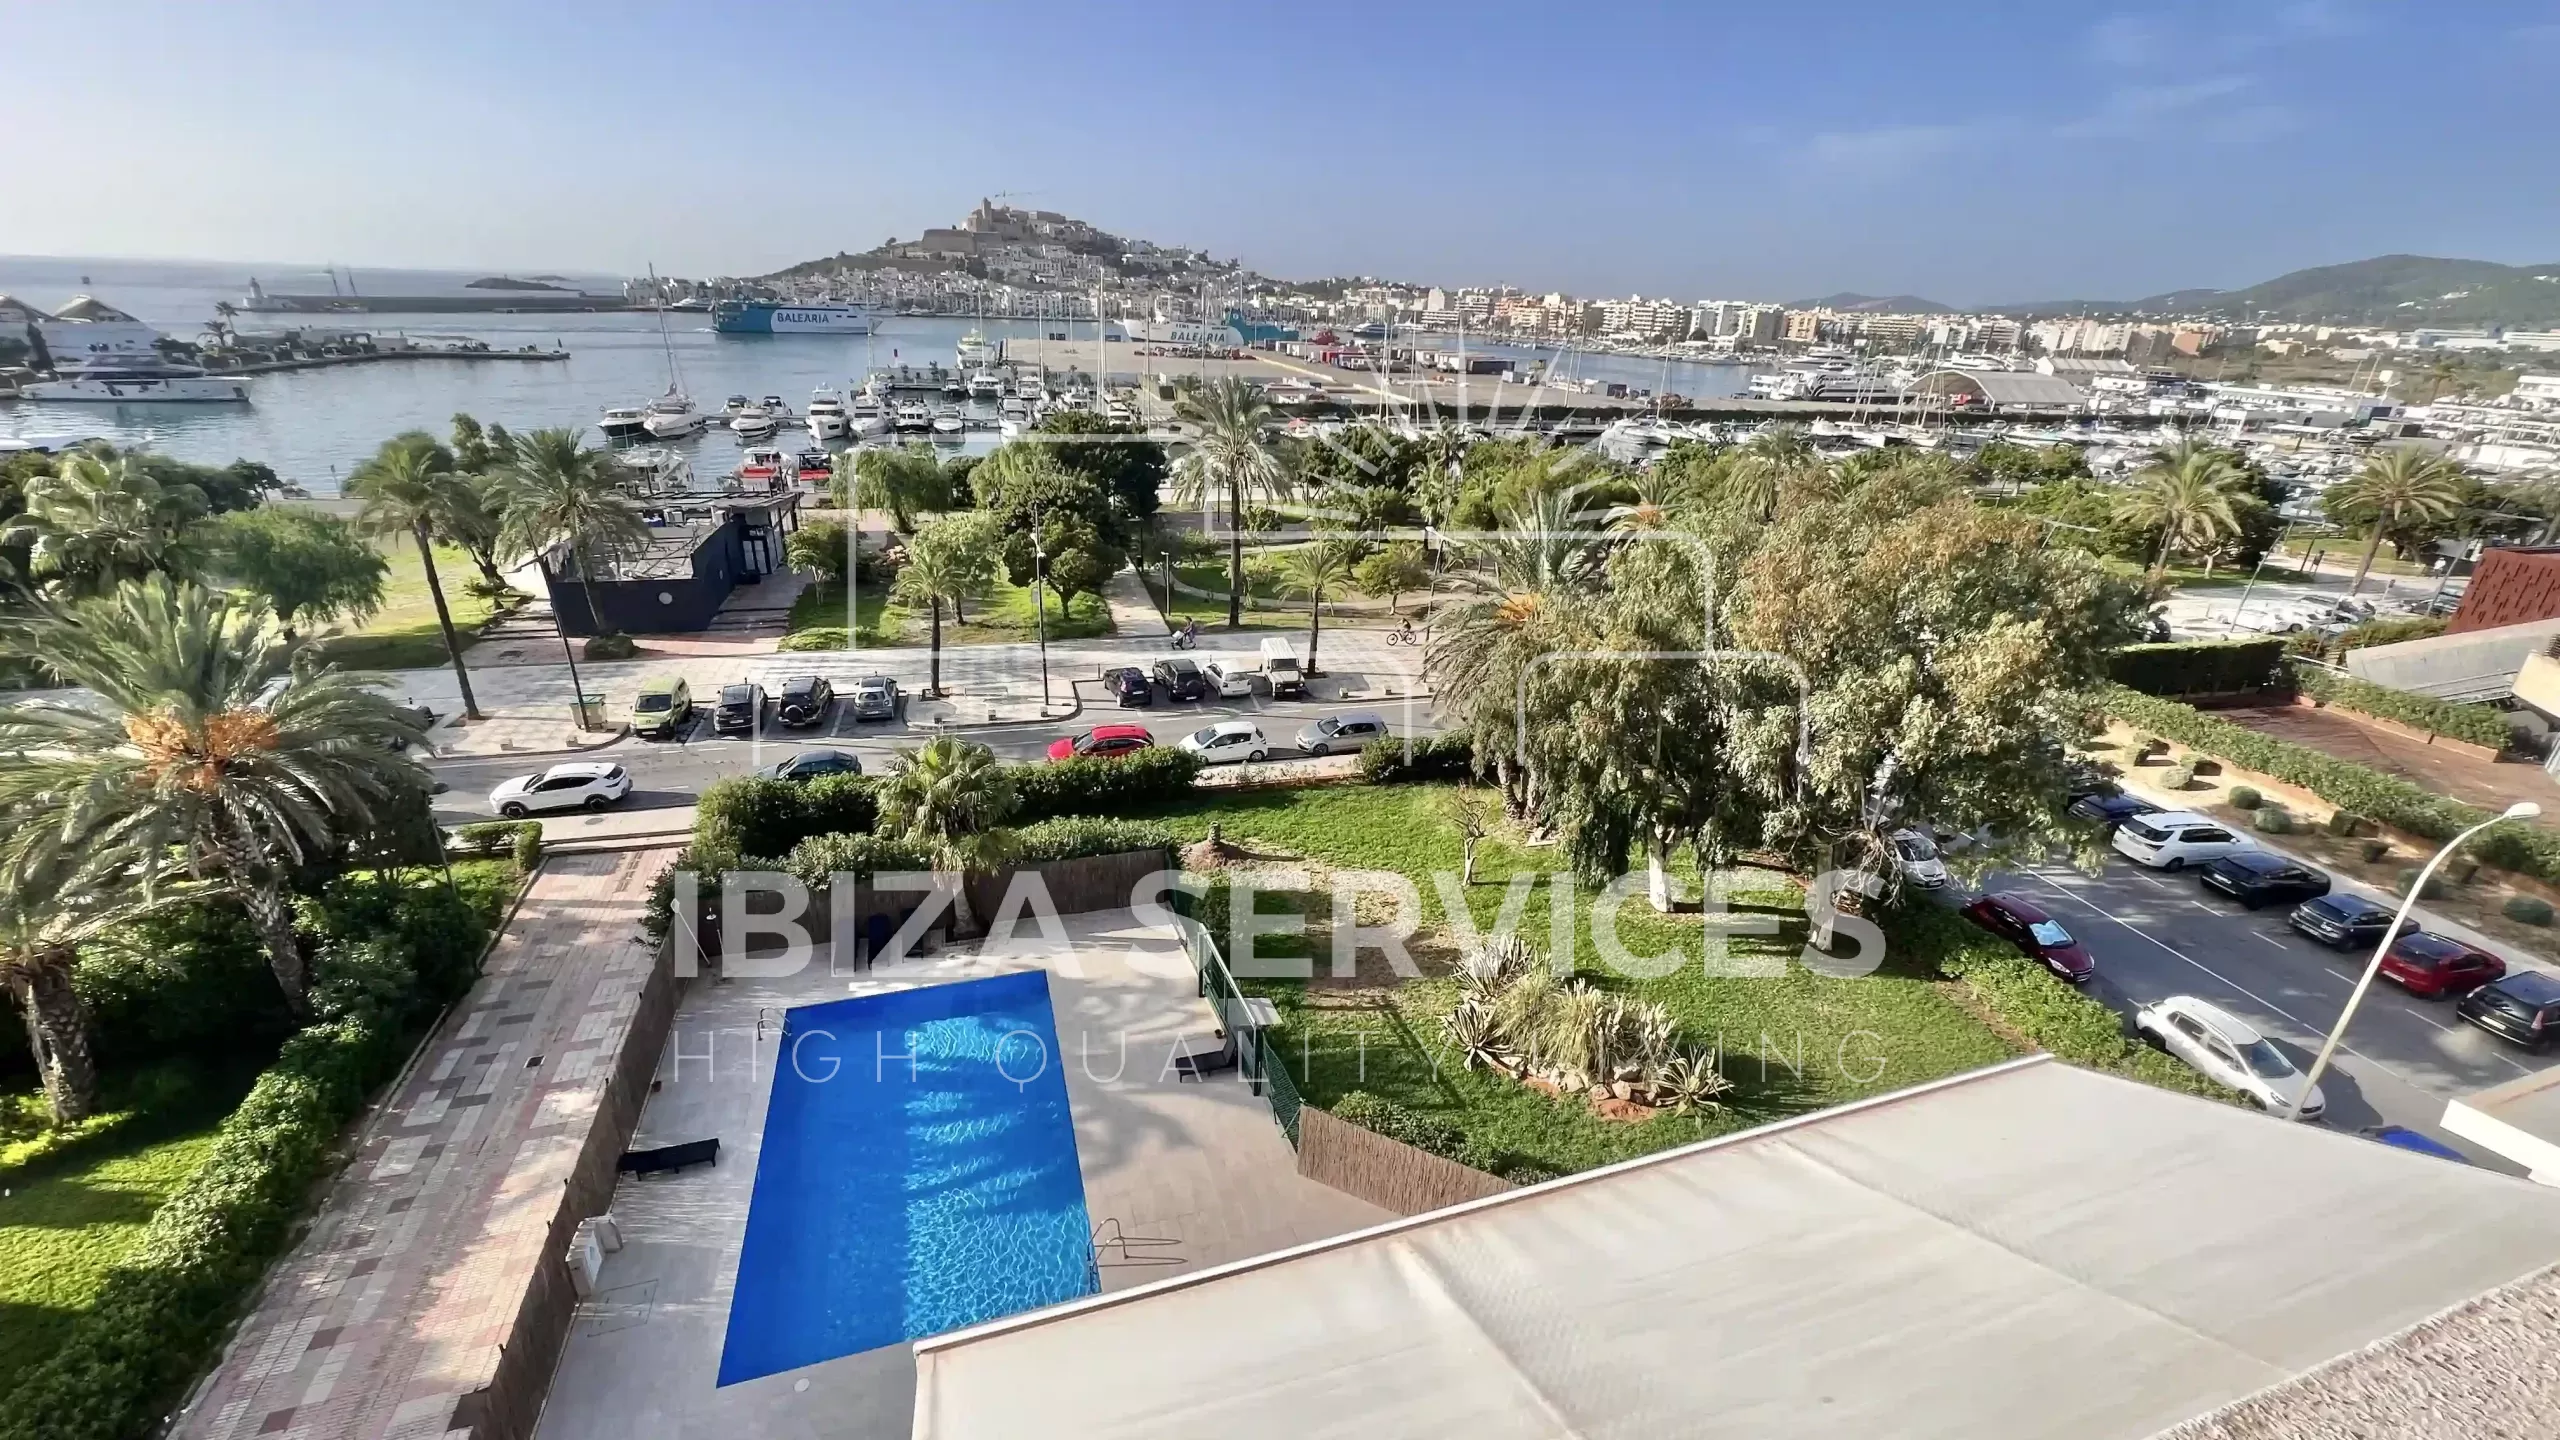 Modern appartement met gemeenschappelijk zwembad in het hart van Marina Botafoch te koop.